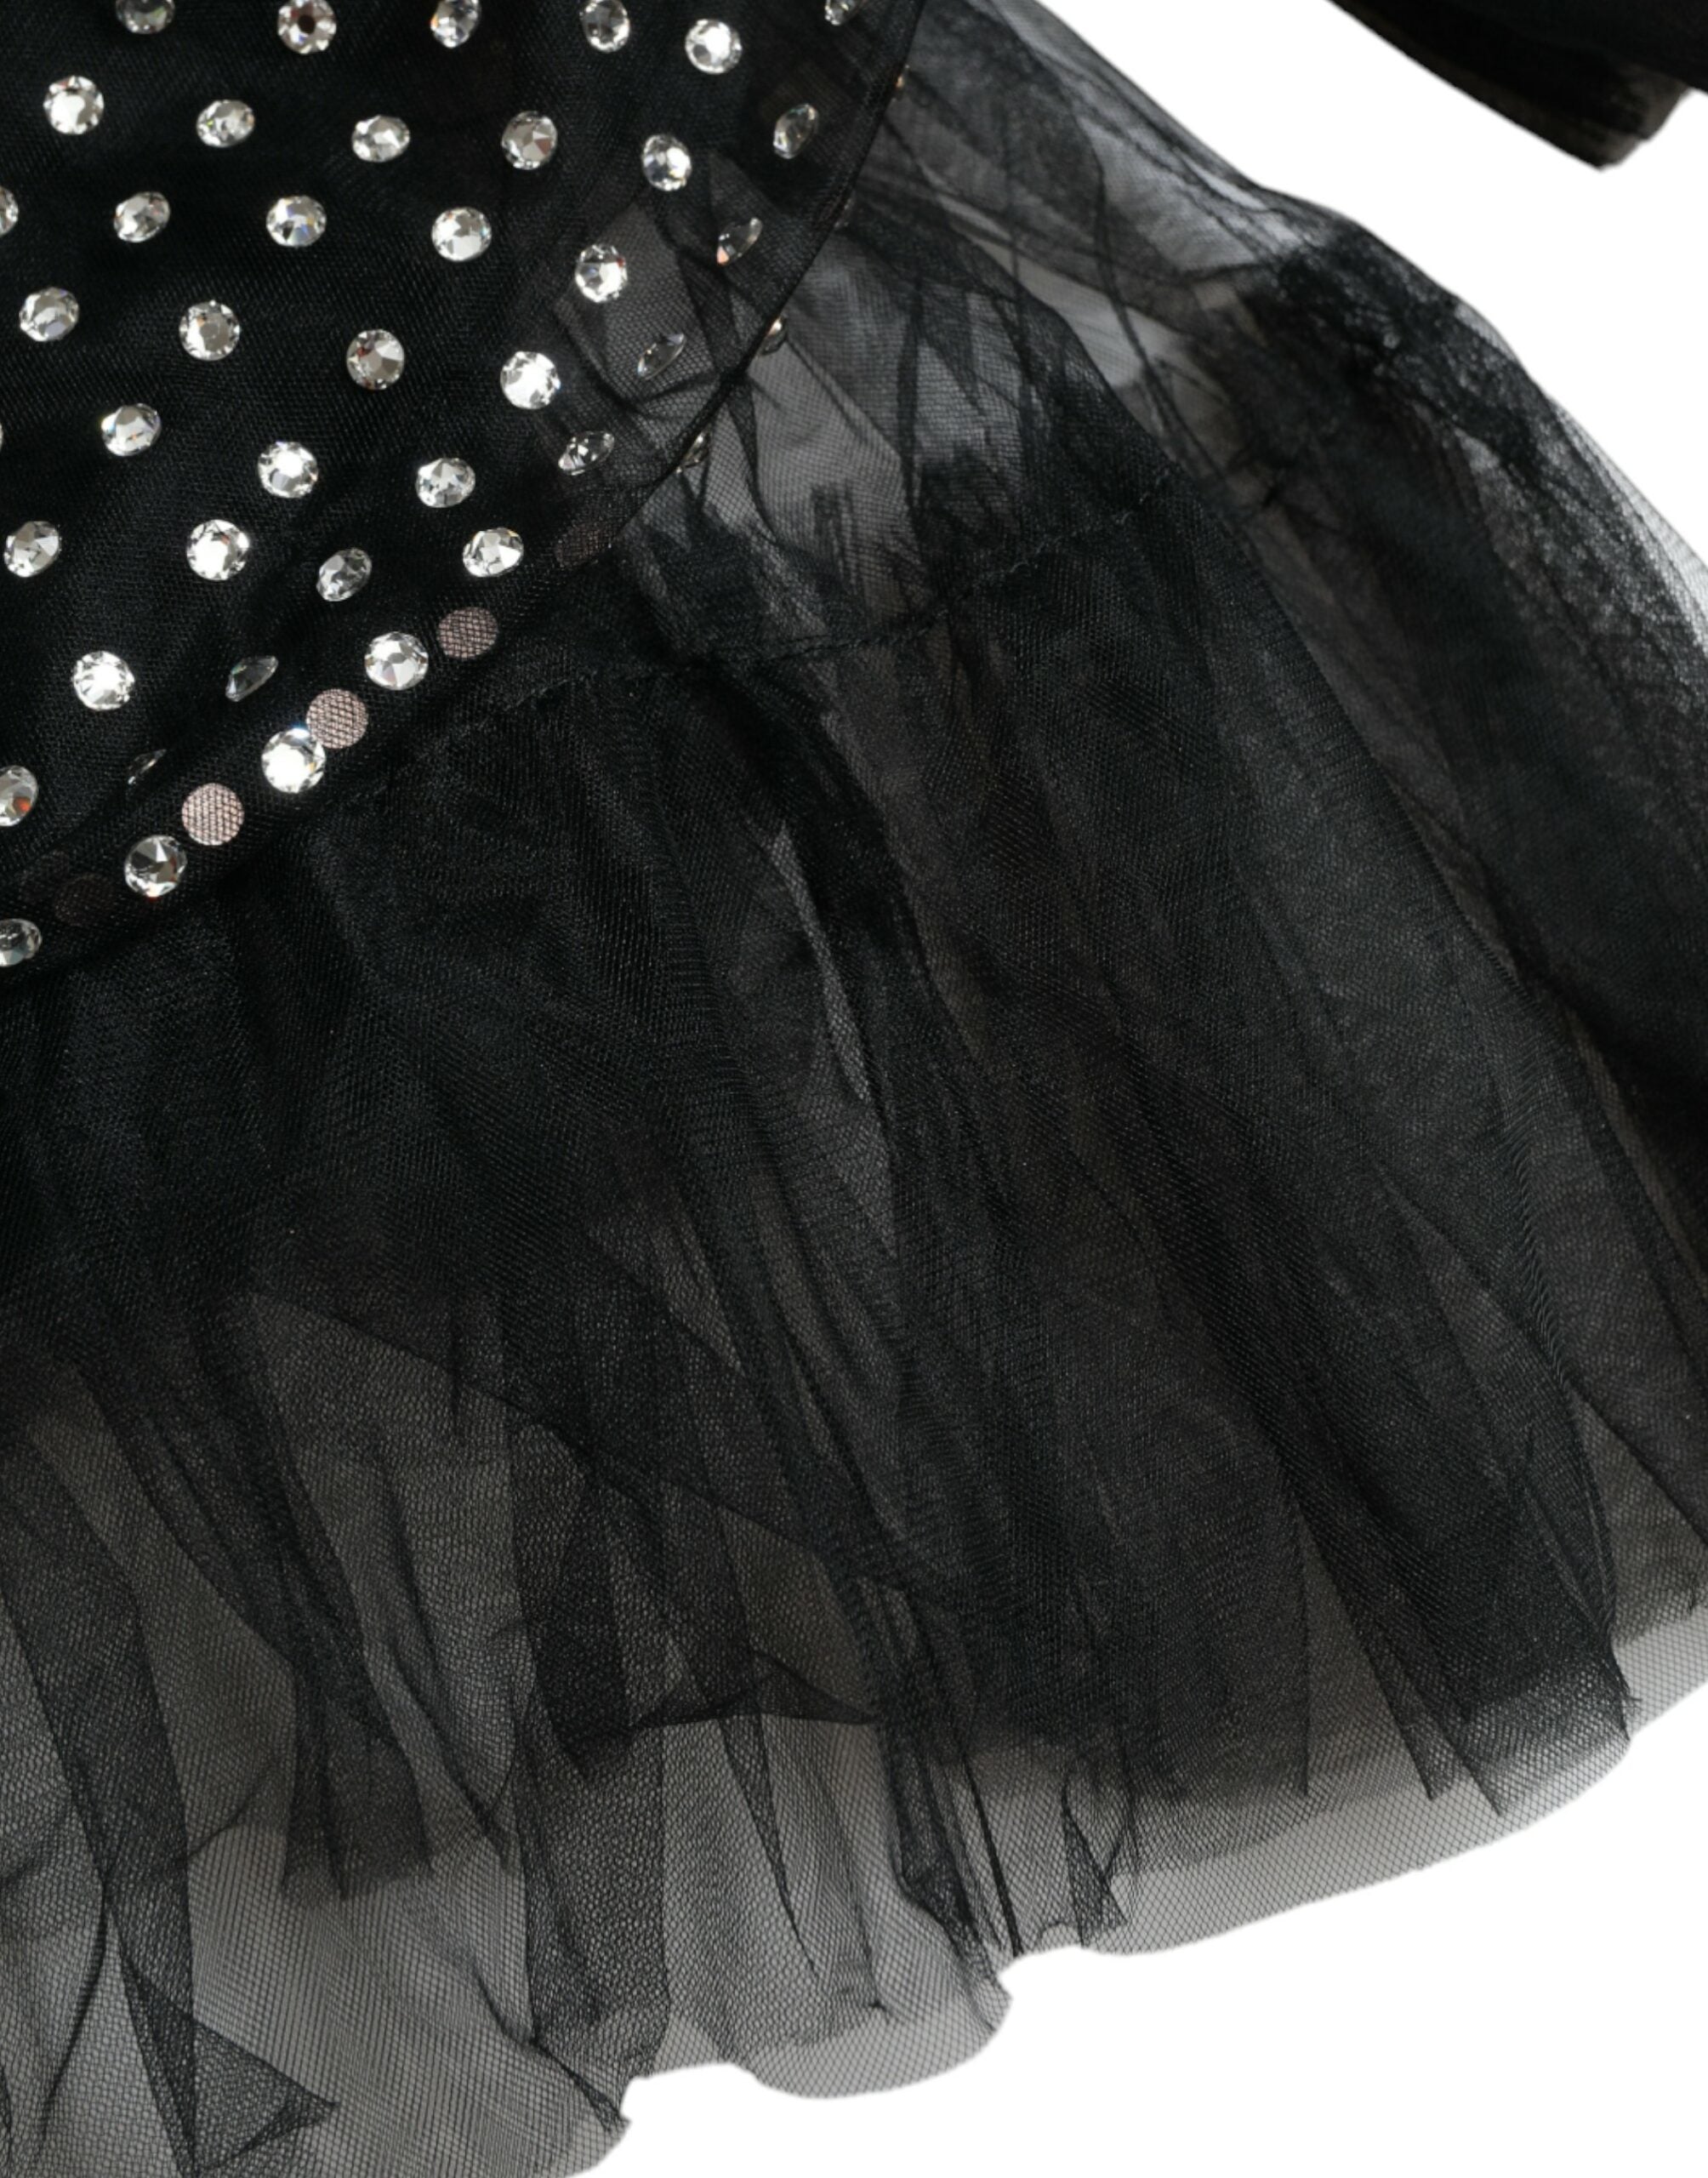 Dolce & Gabbana Sort Crystal Embellished A-line Gown Kjole-Modeoutlet